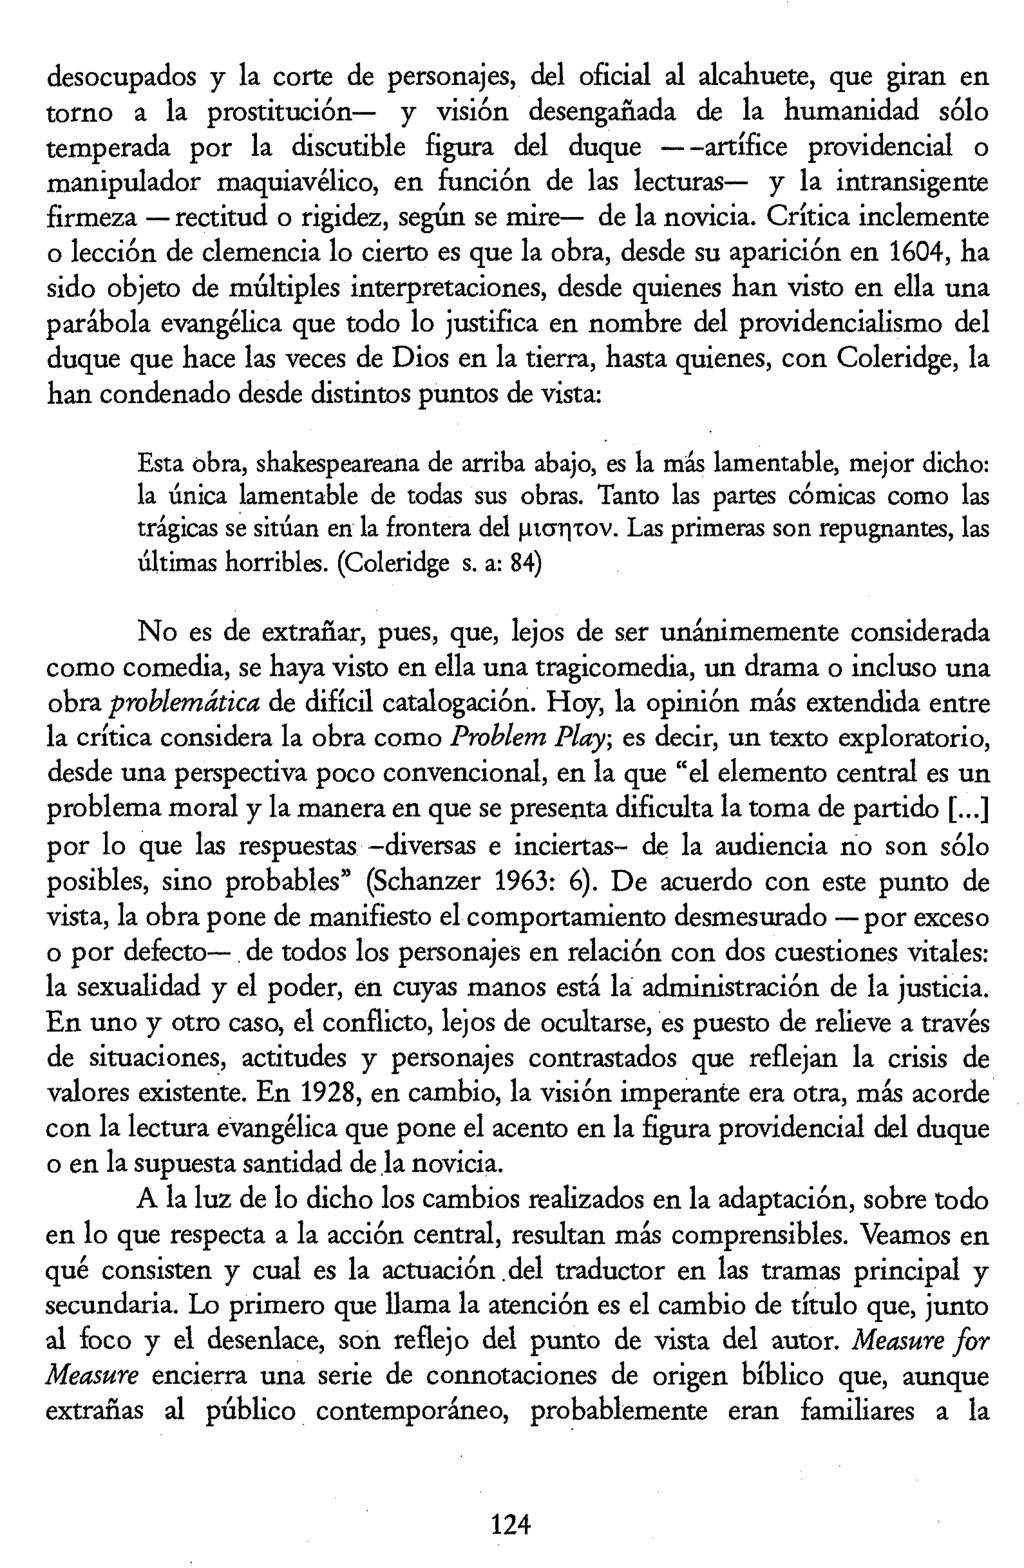 Luis Pegenaute (Ed.) La traducción en la Edad de Plata pic